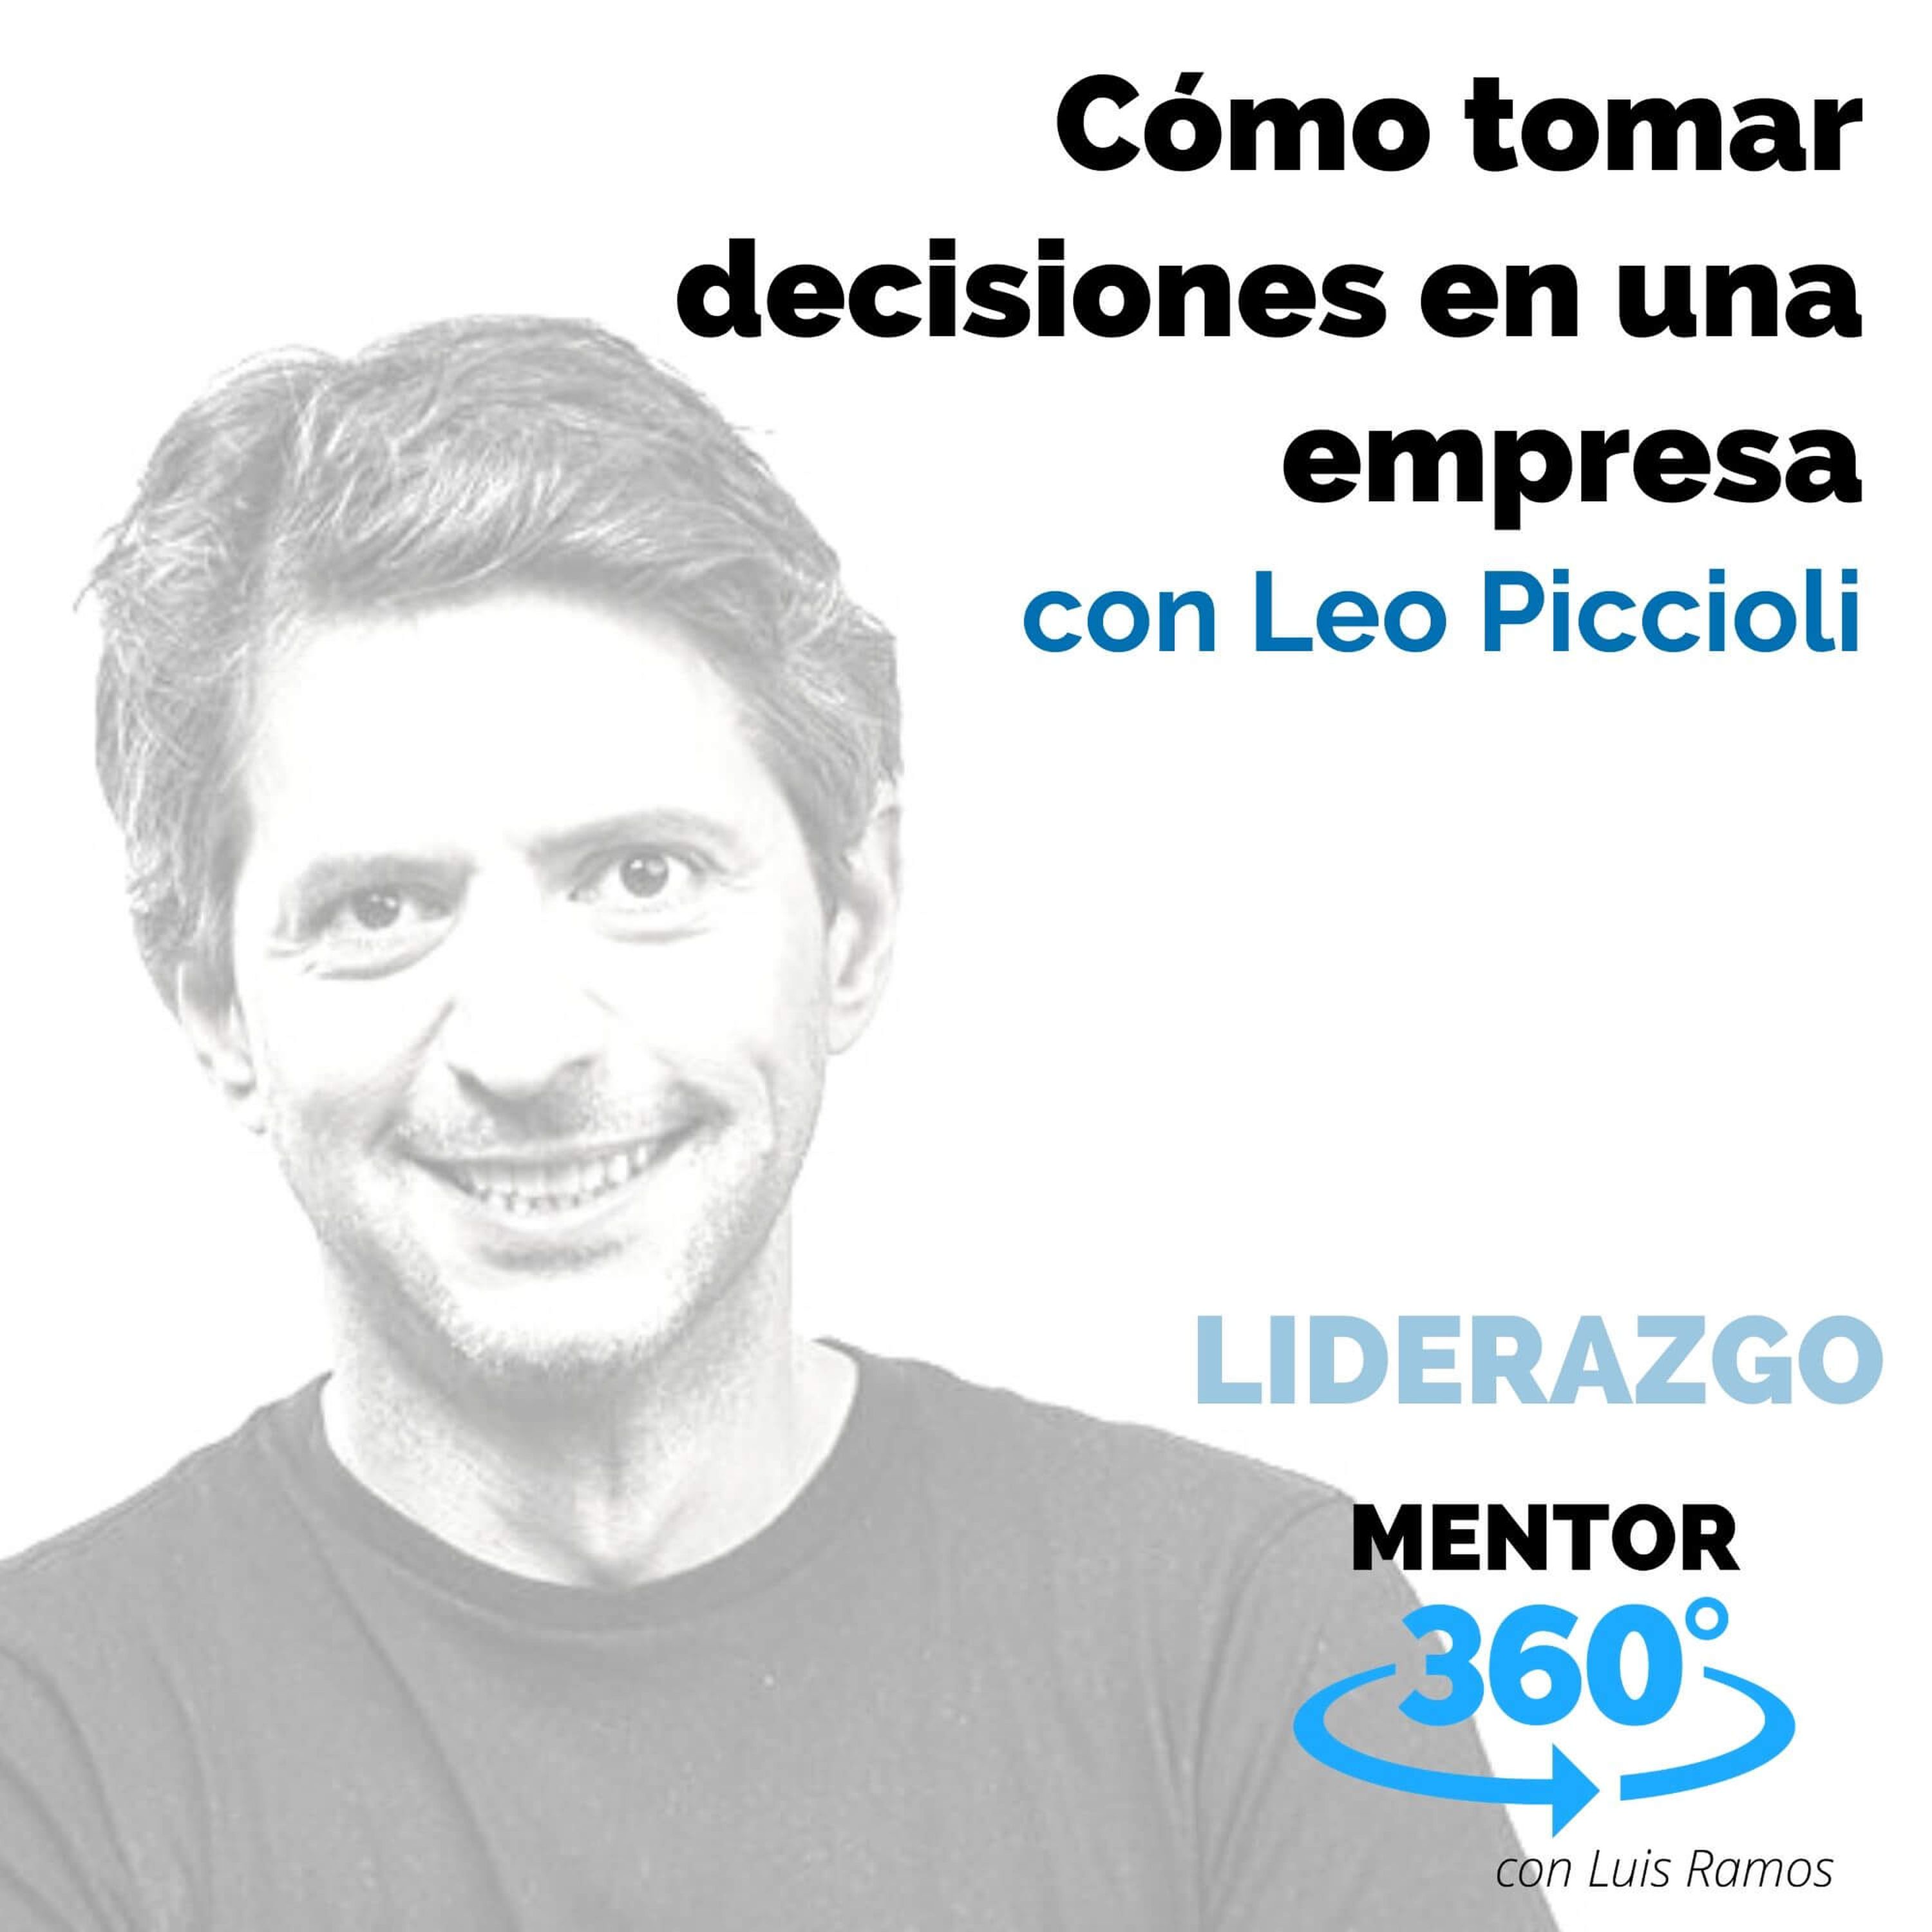 Cómo tomar decisiones en una empresa, Con Leo Piccioli - LIDERAZGO